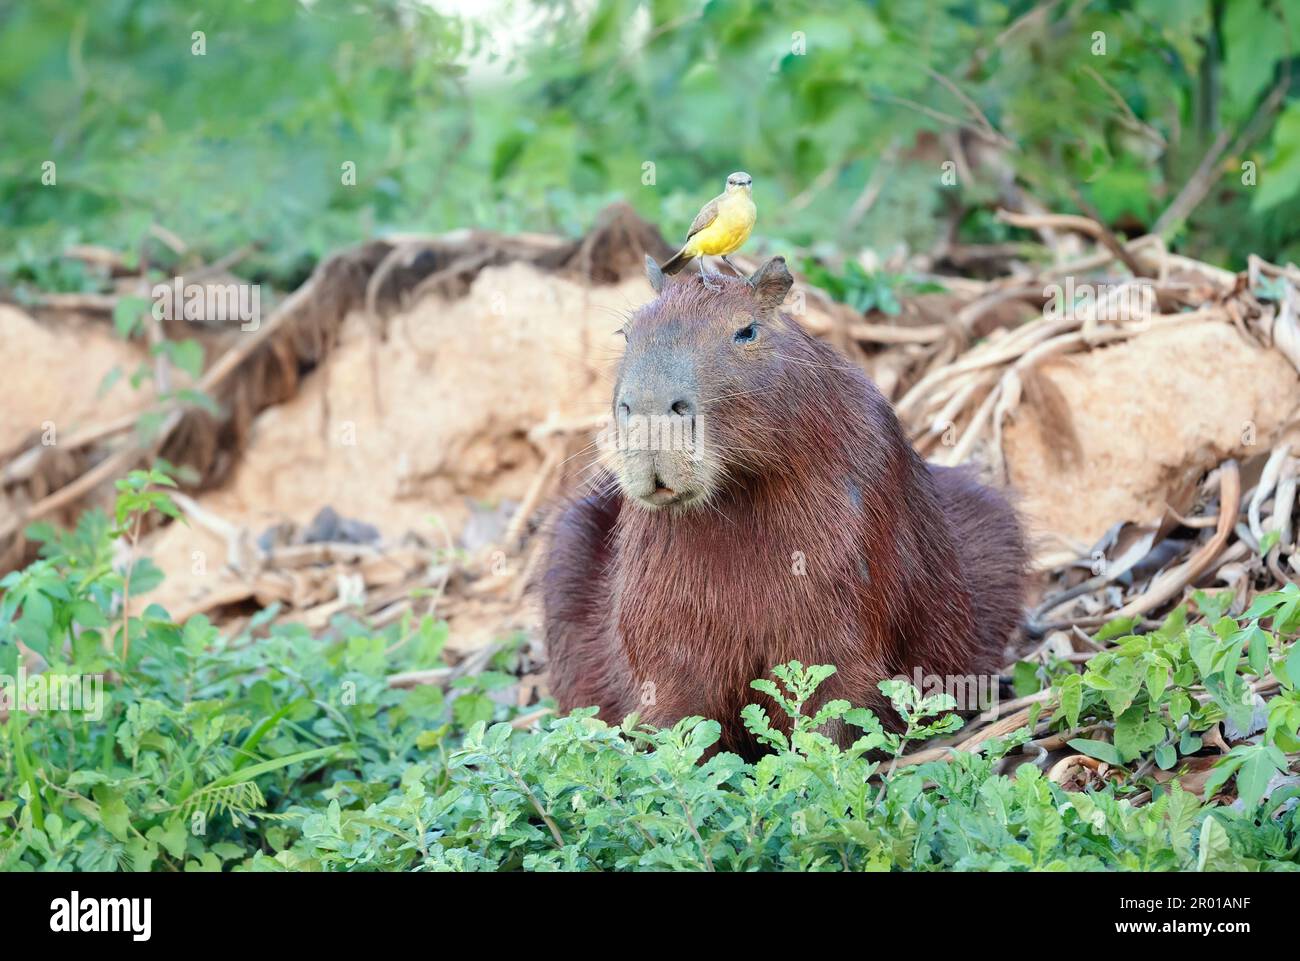 Gros plan d'un Capybara avec un oiseau Cattle tyrant assis sur une tête, South Pantanal, Brésil. Banque D'Images